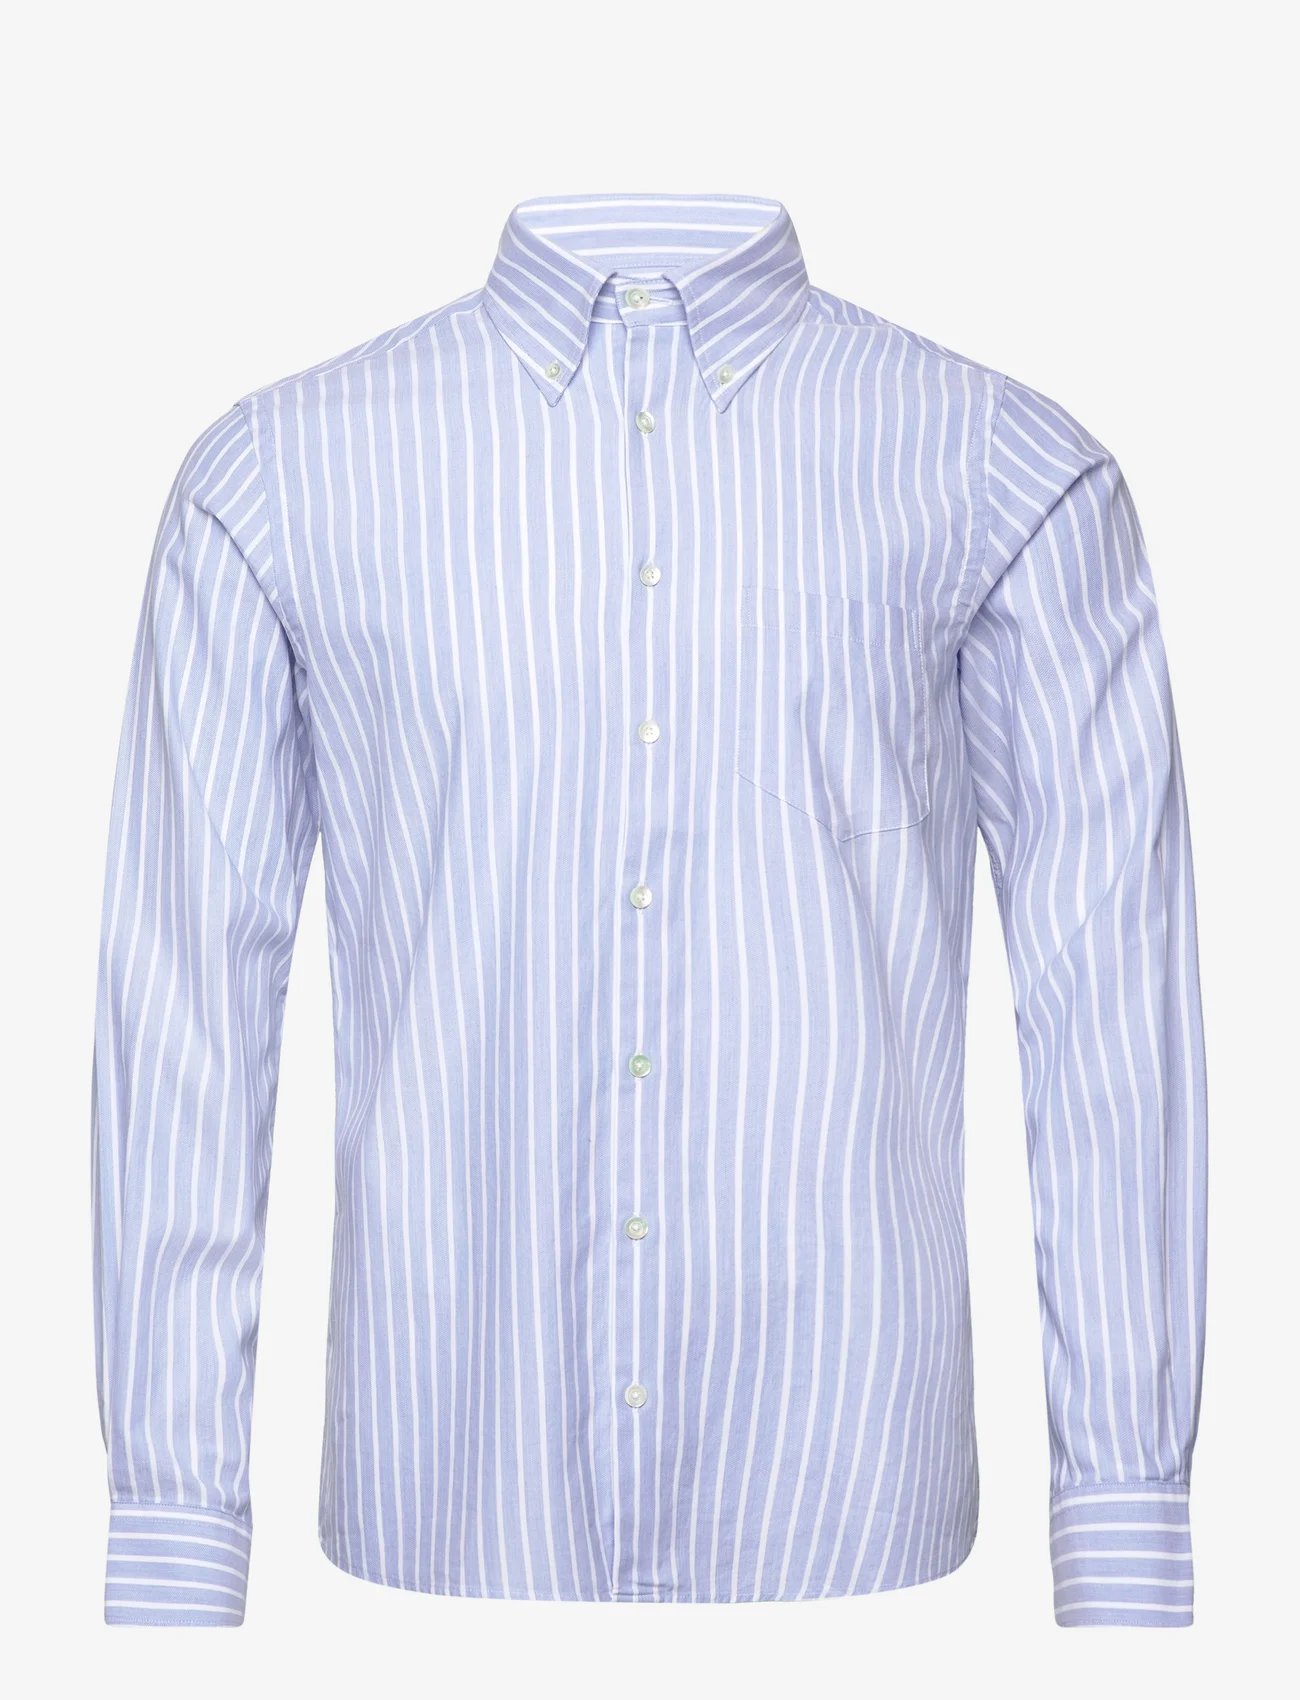 SIR of Sweden - Jerry Shirt - business shirts - lt blue - 0